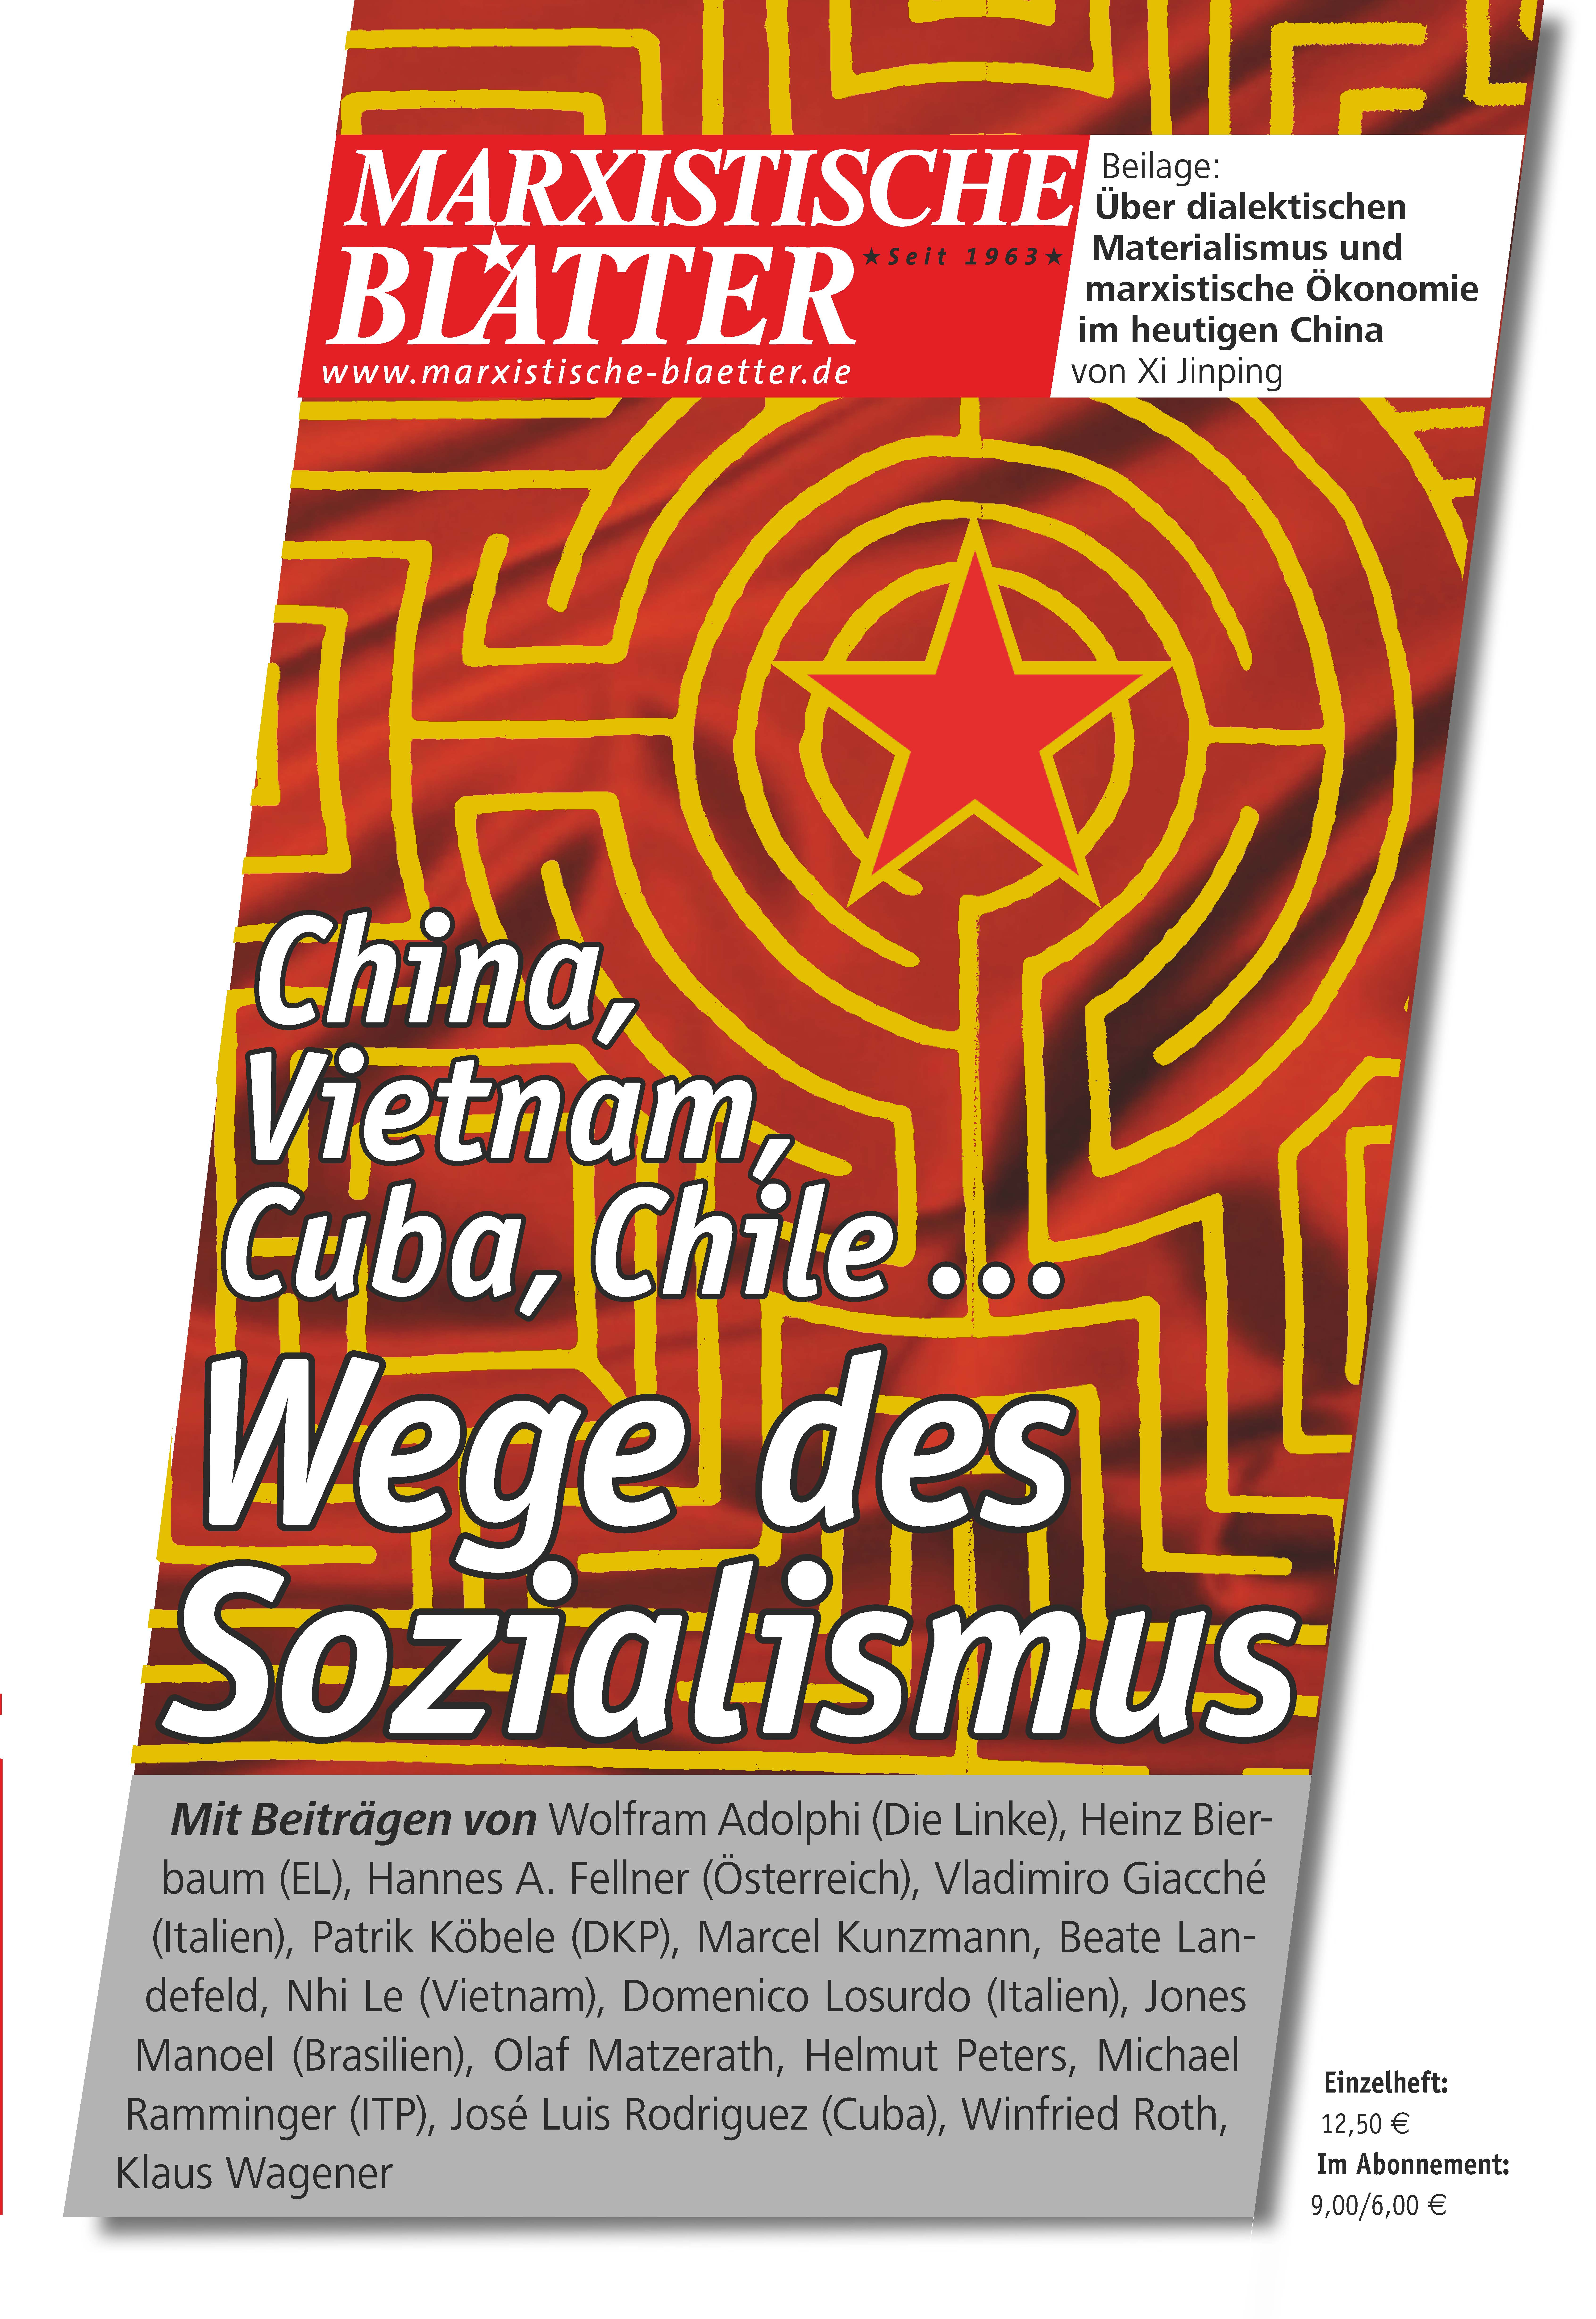 Marxisitische Blätter - Wege des Sozialismus